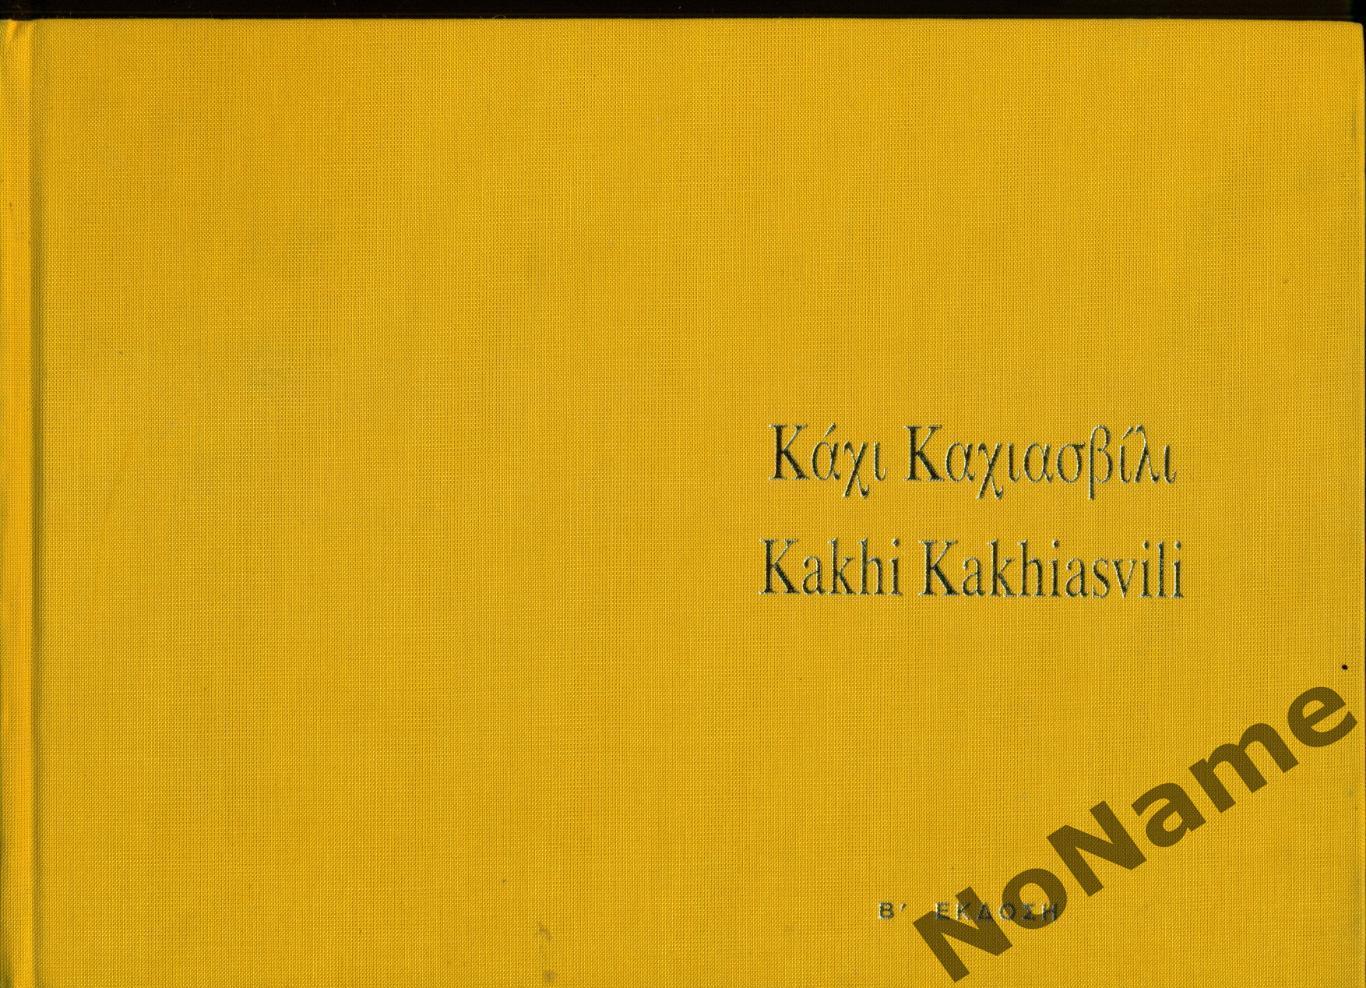 Кахи Кахиашвили. 2003 г., 293 стр. (на греческом и английском языках)